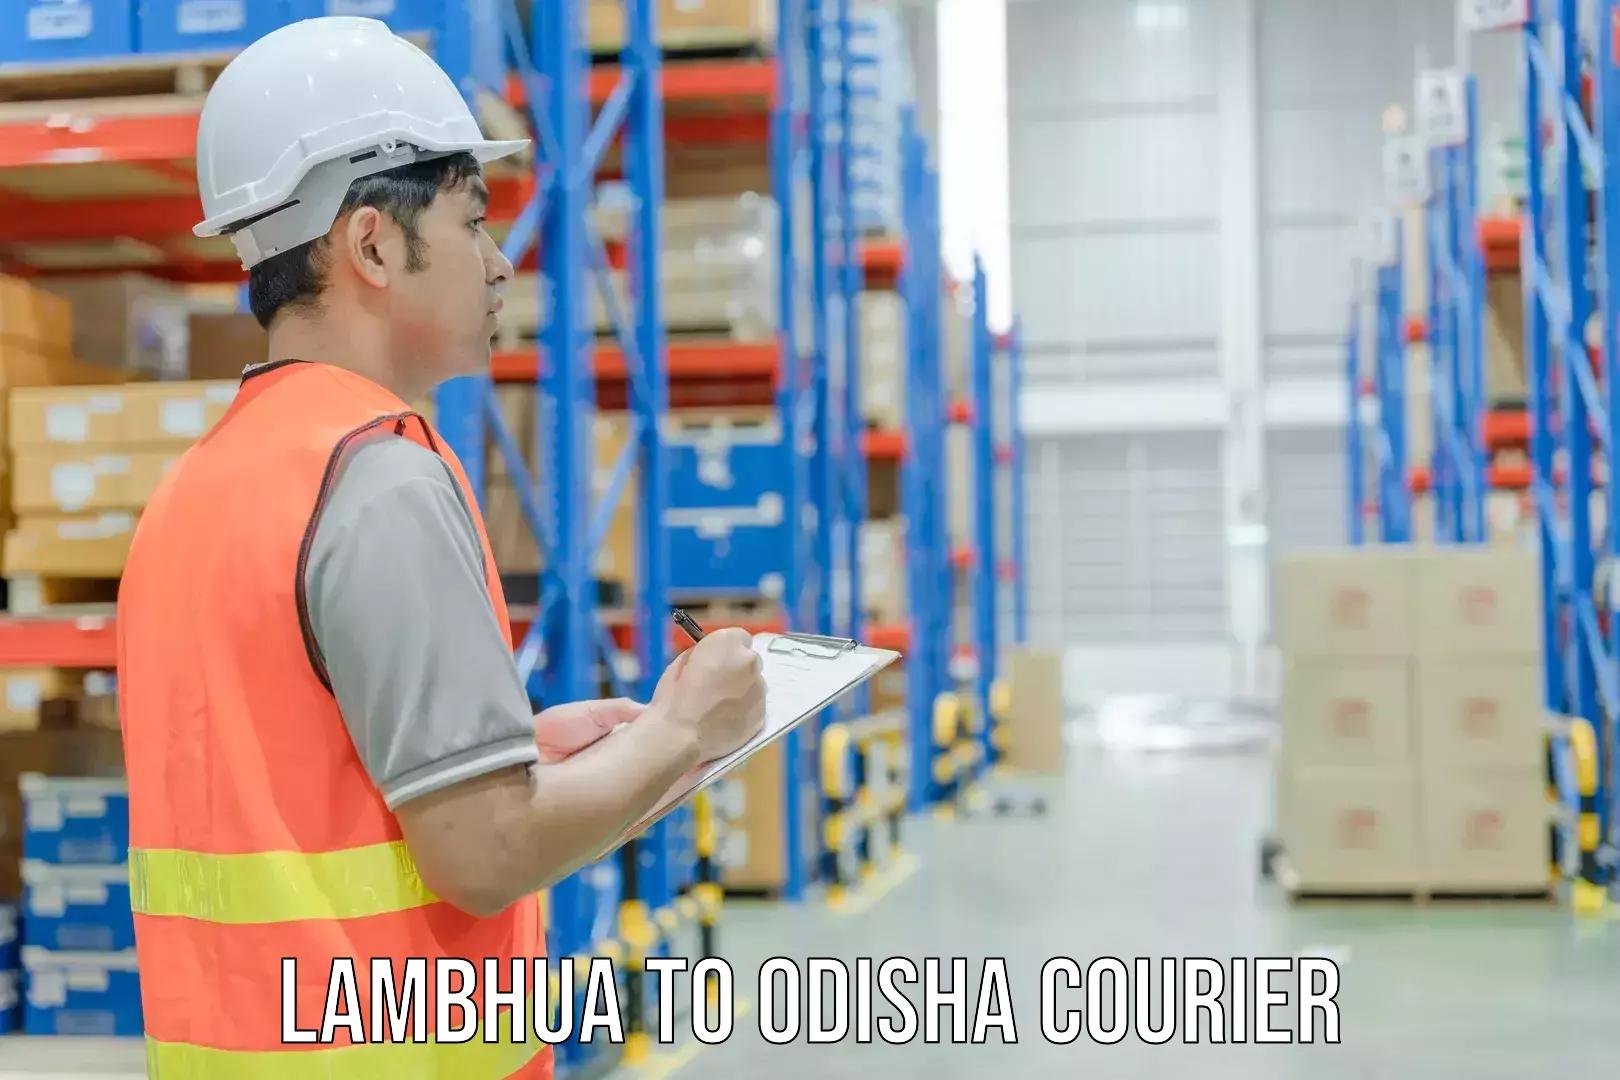 Domestic courier Lambhua to Odisha